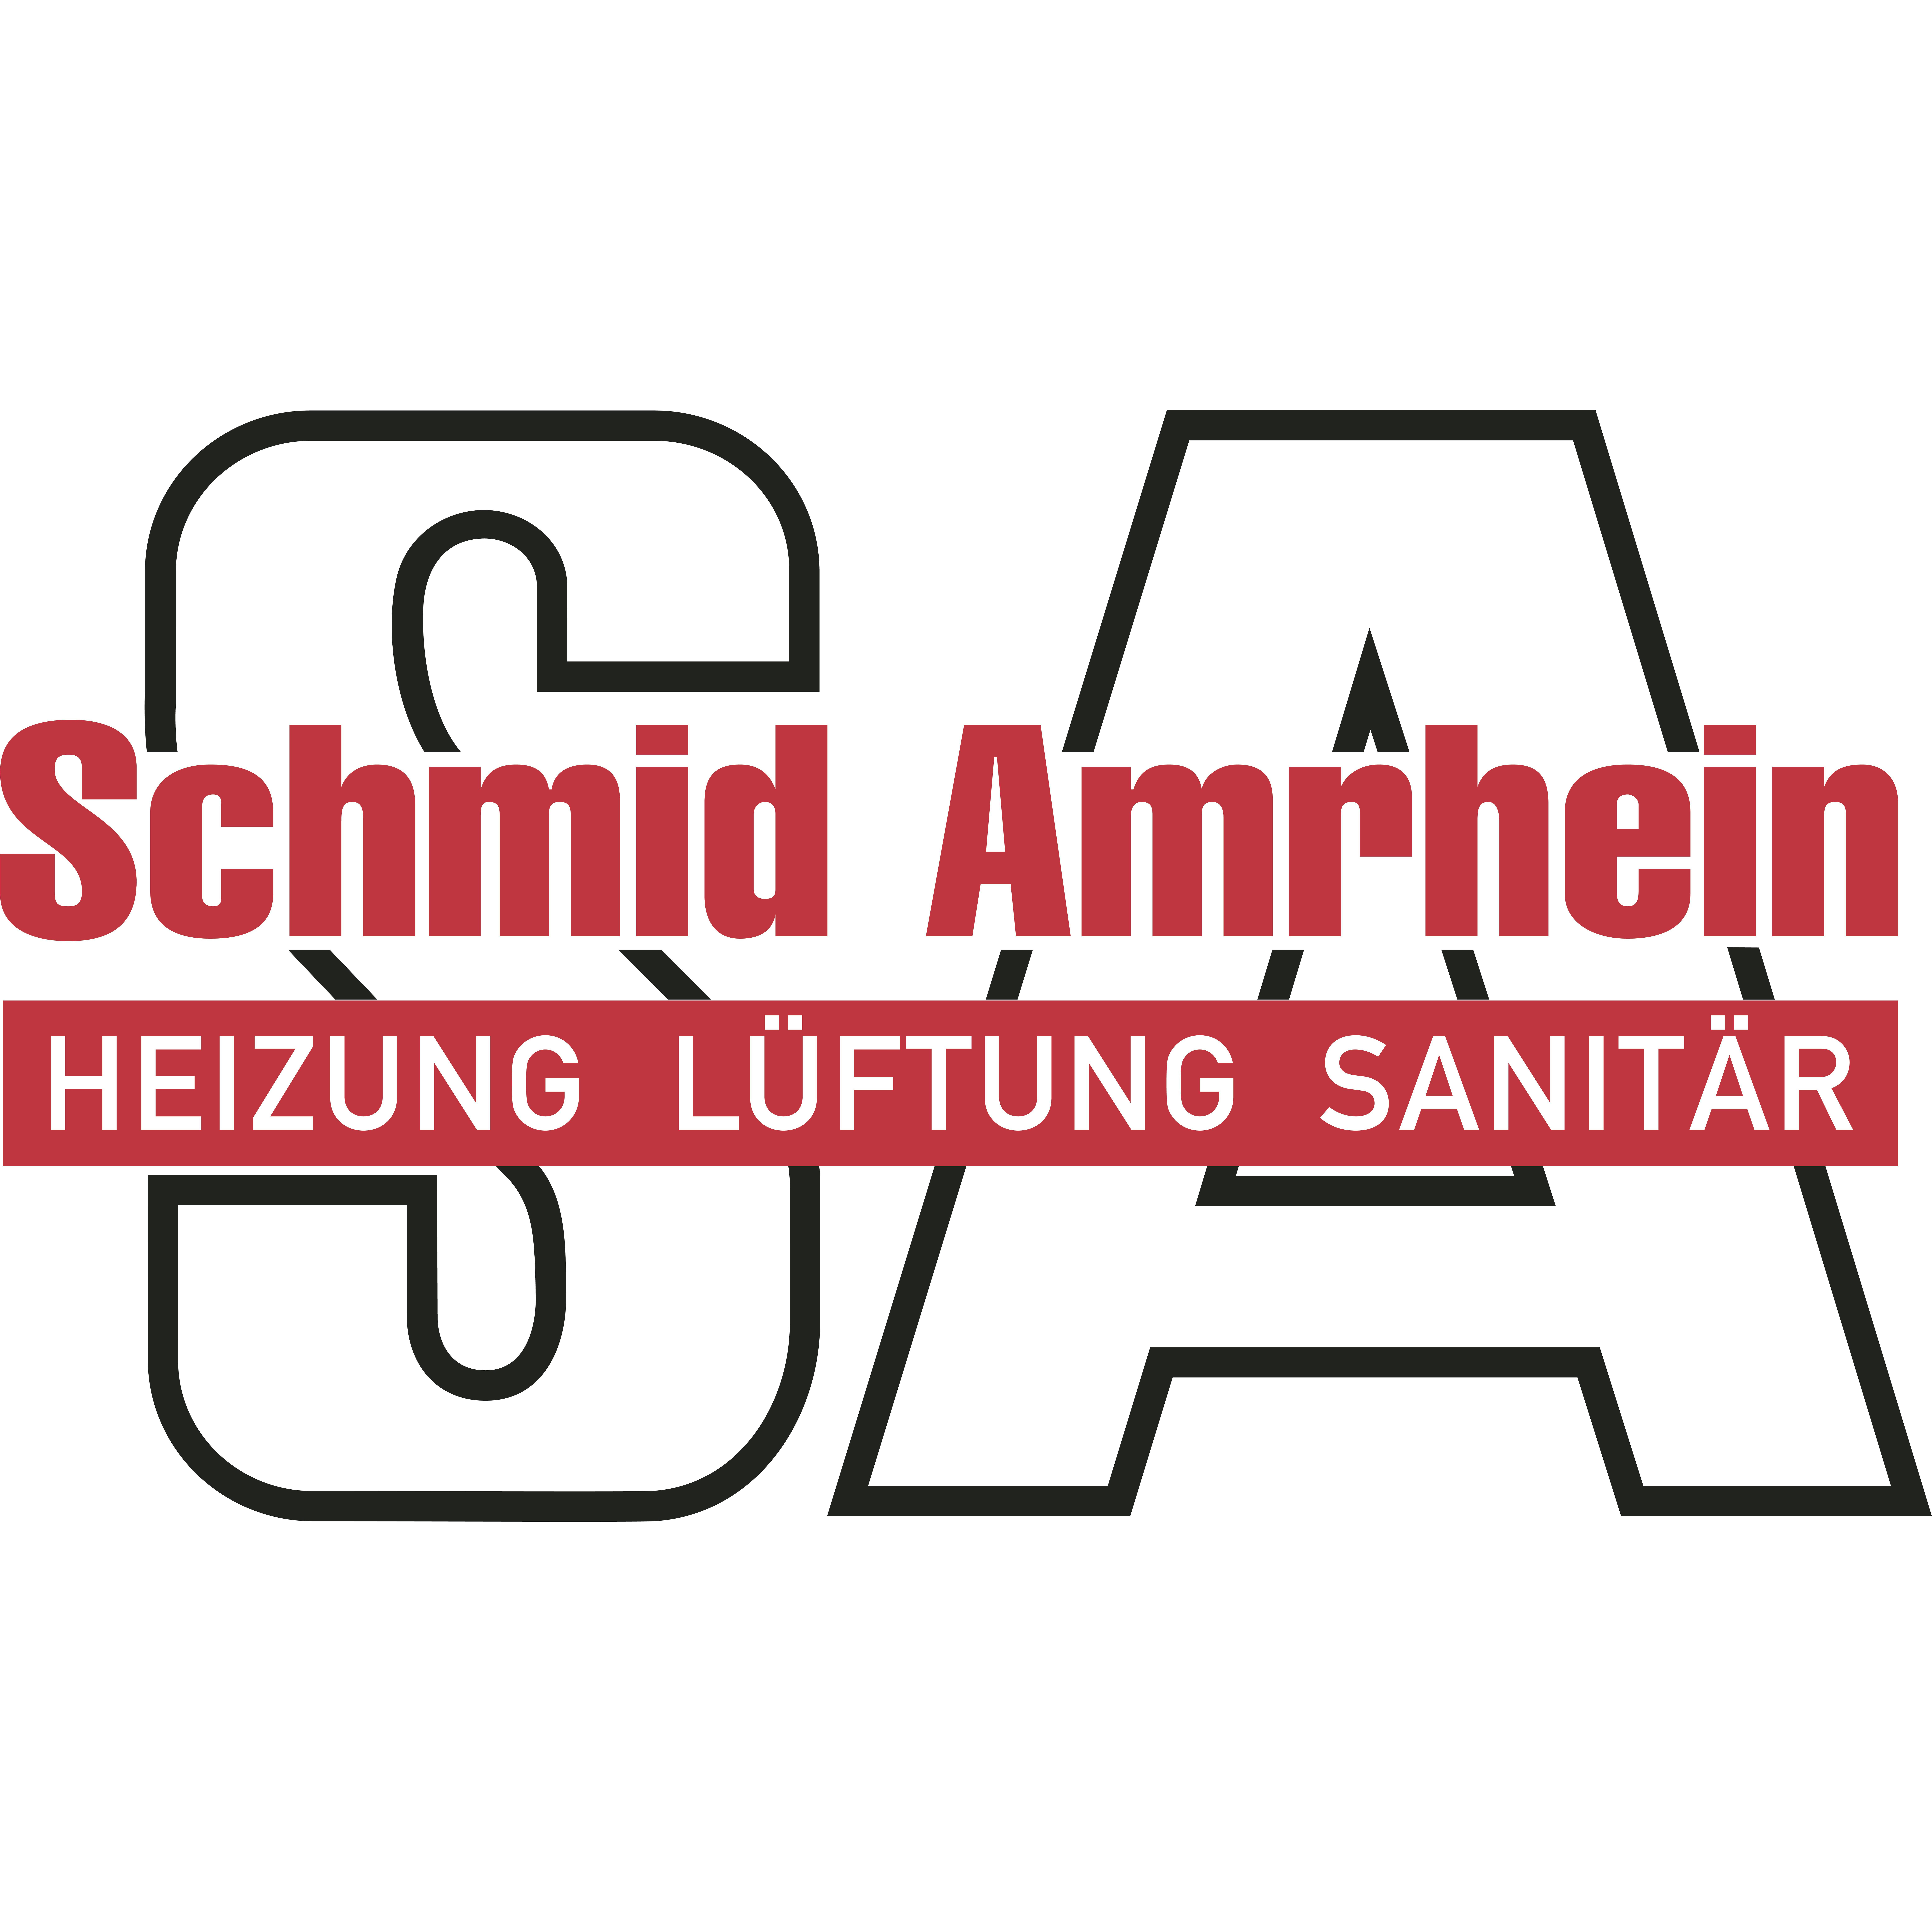 Schmid Amrhein AG - Sanitation Service - Luzern - 041 281 23 77 Switzerland | ShowMeLocal.com